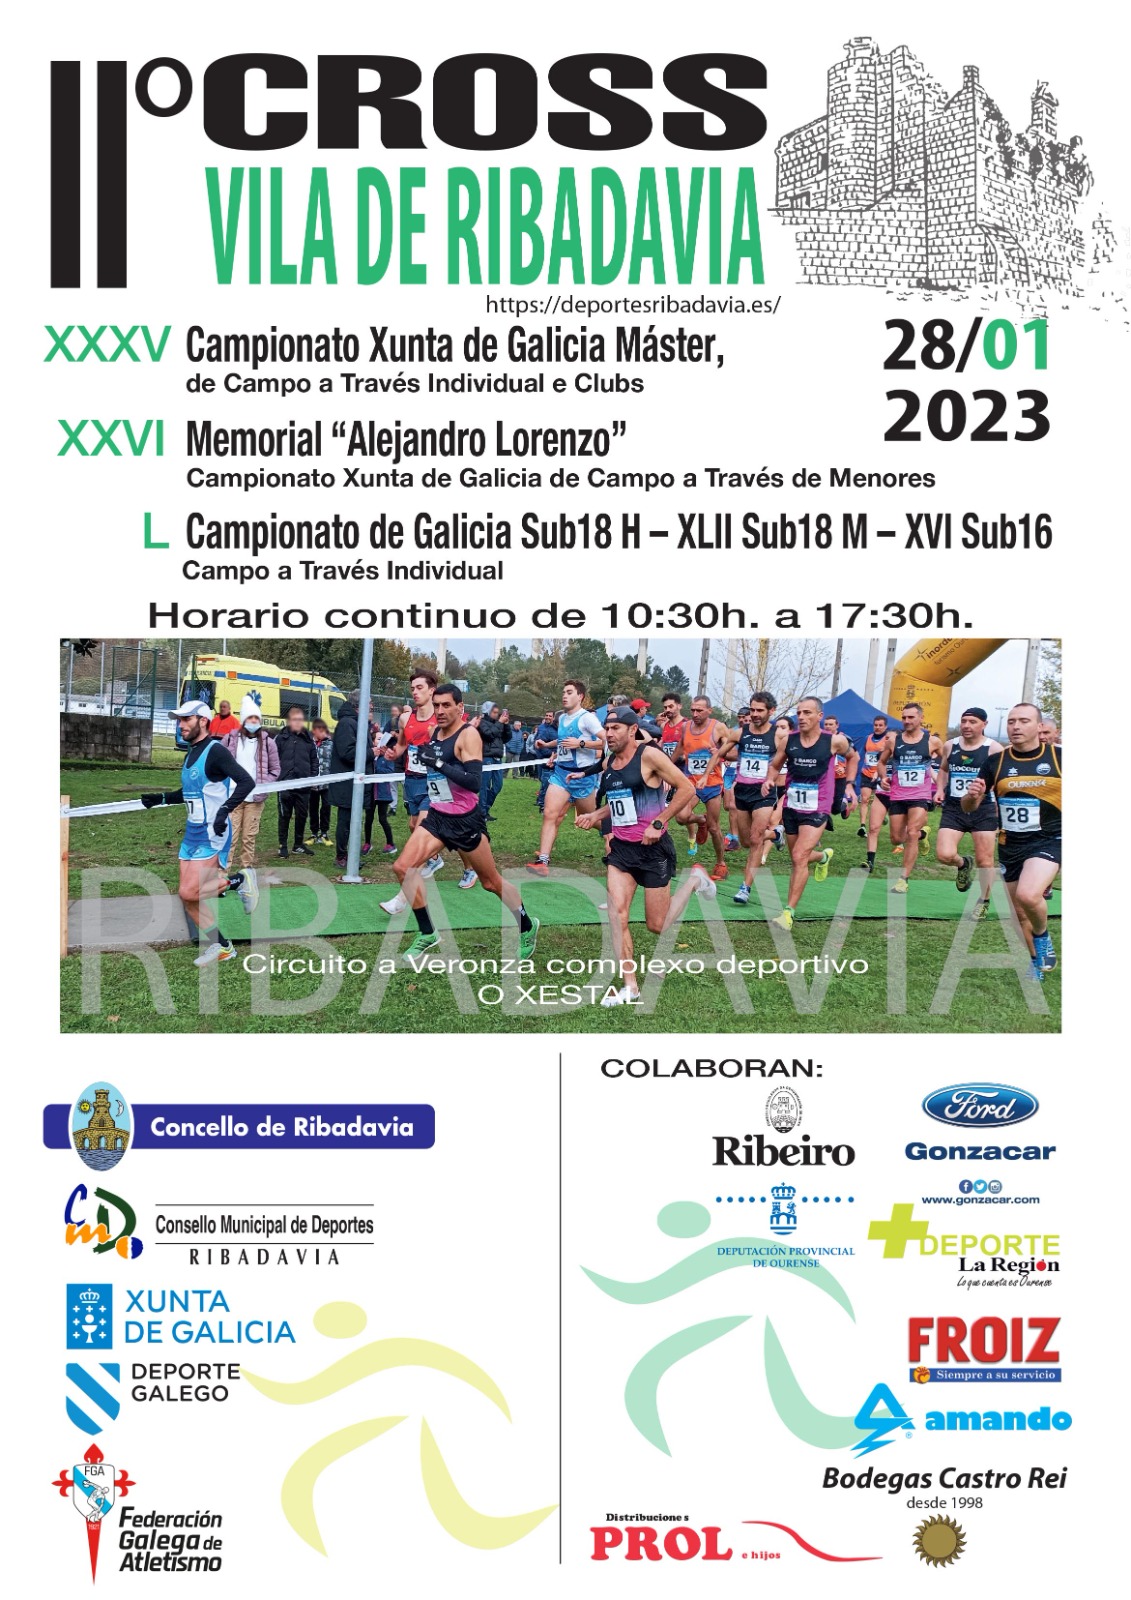 XXVI Memorial “Alejandro Lorenzo” – Campionato Xunta de Galicia de Campo a Través de Menores